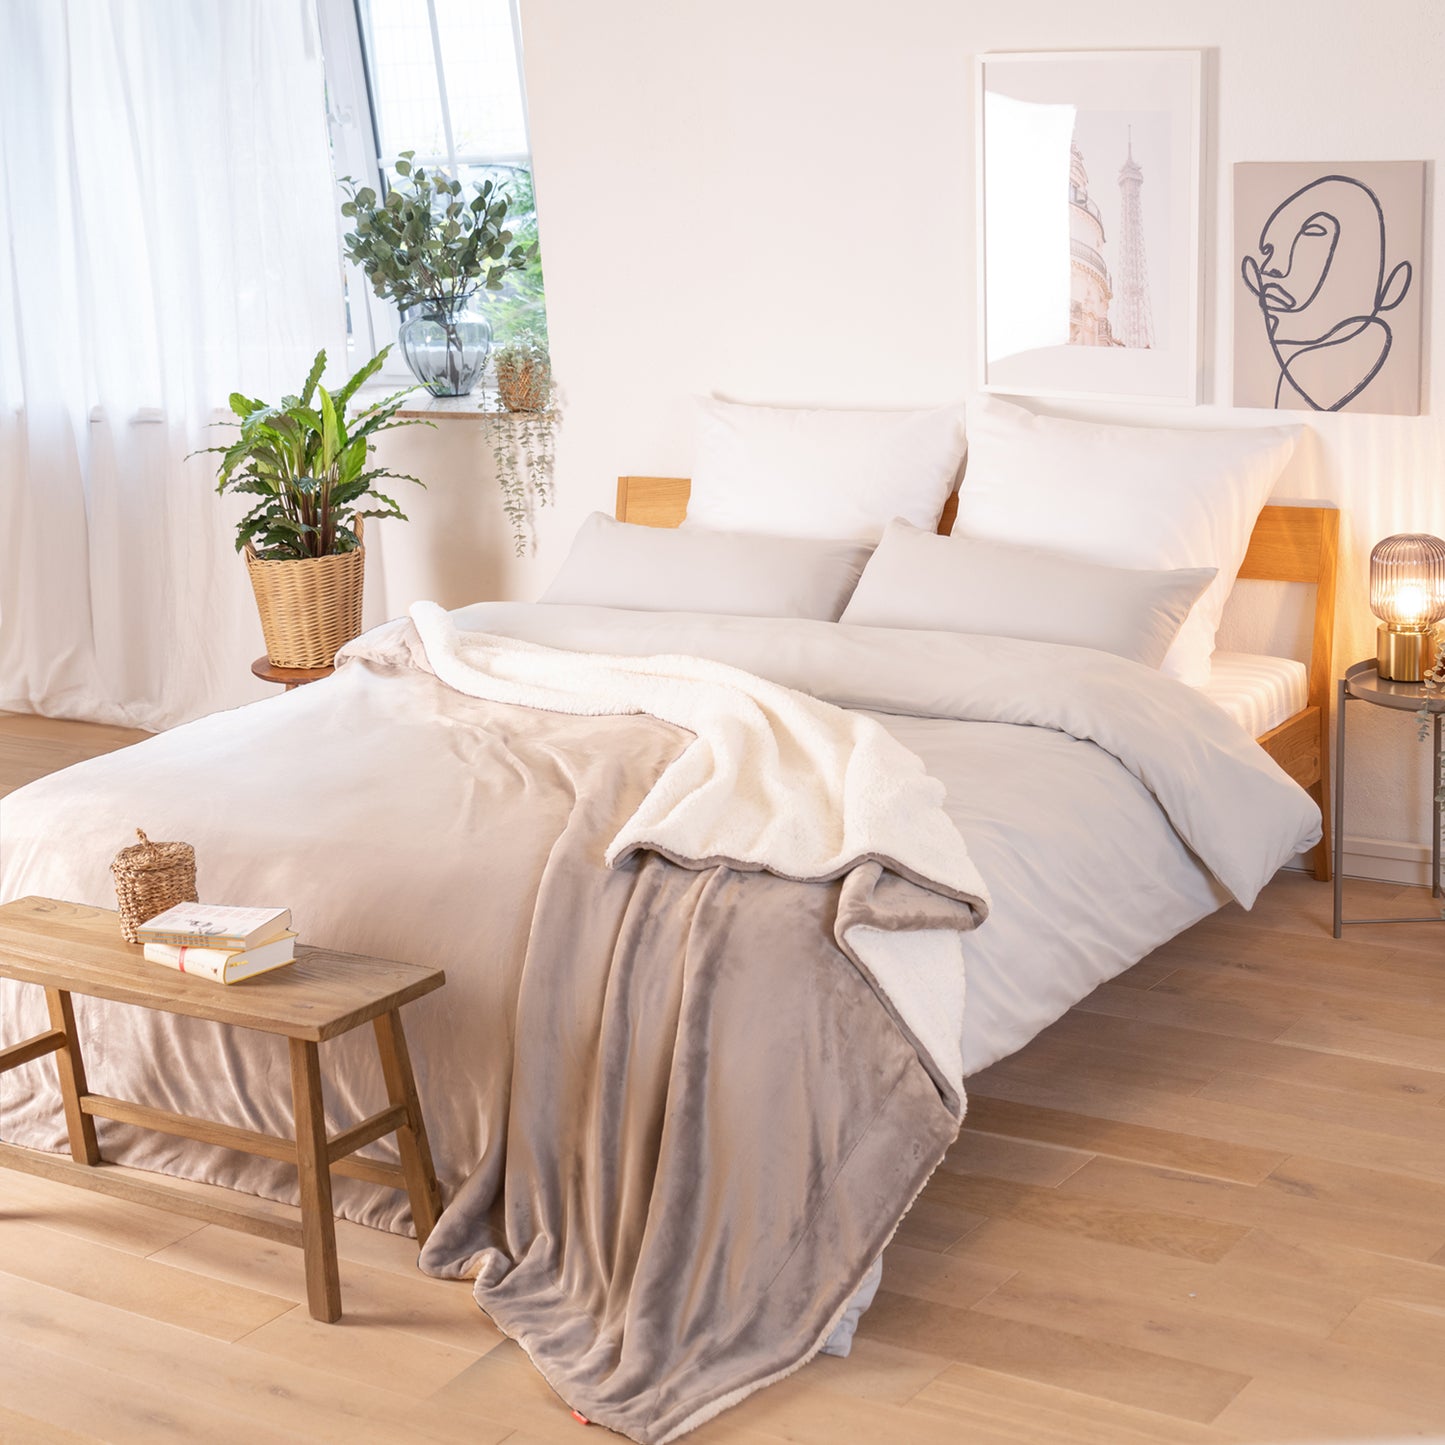 Graue Decke mit weißer Fleece-Innenseite, ausgebreitet über ein Bett in einem Raum mit natürlicher Beleuchtung, Pflanzen und Bildern im Hintergrund.